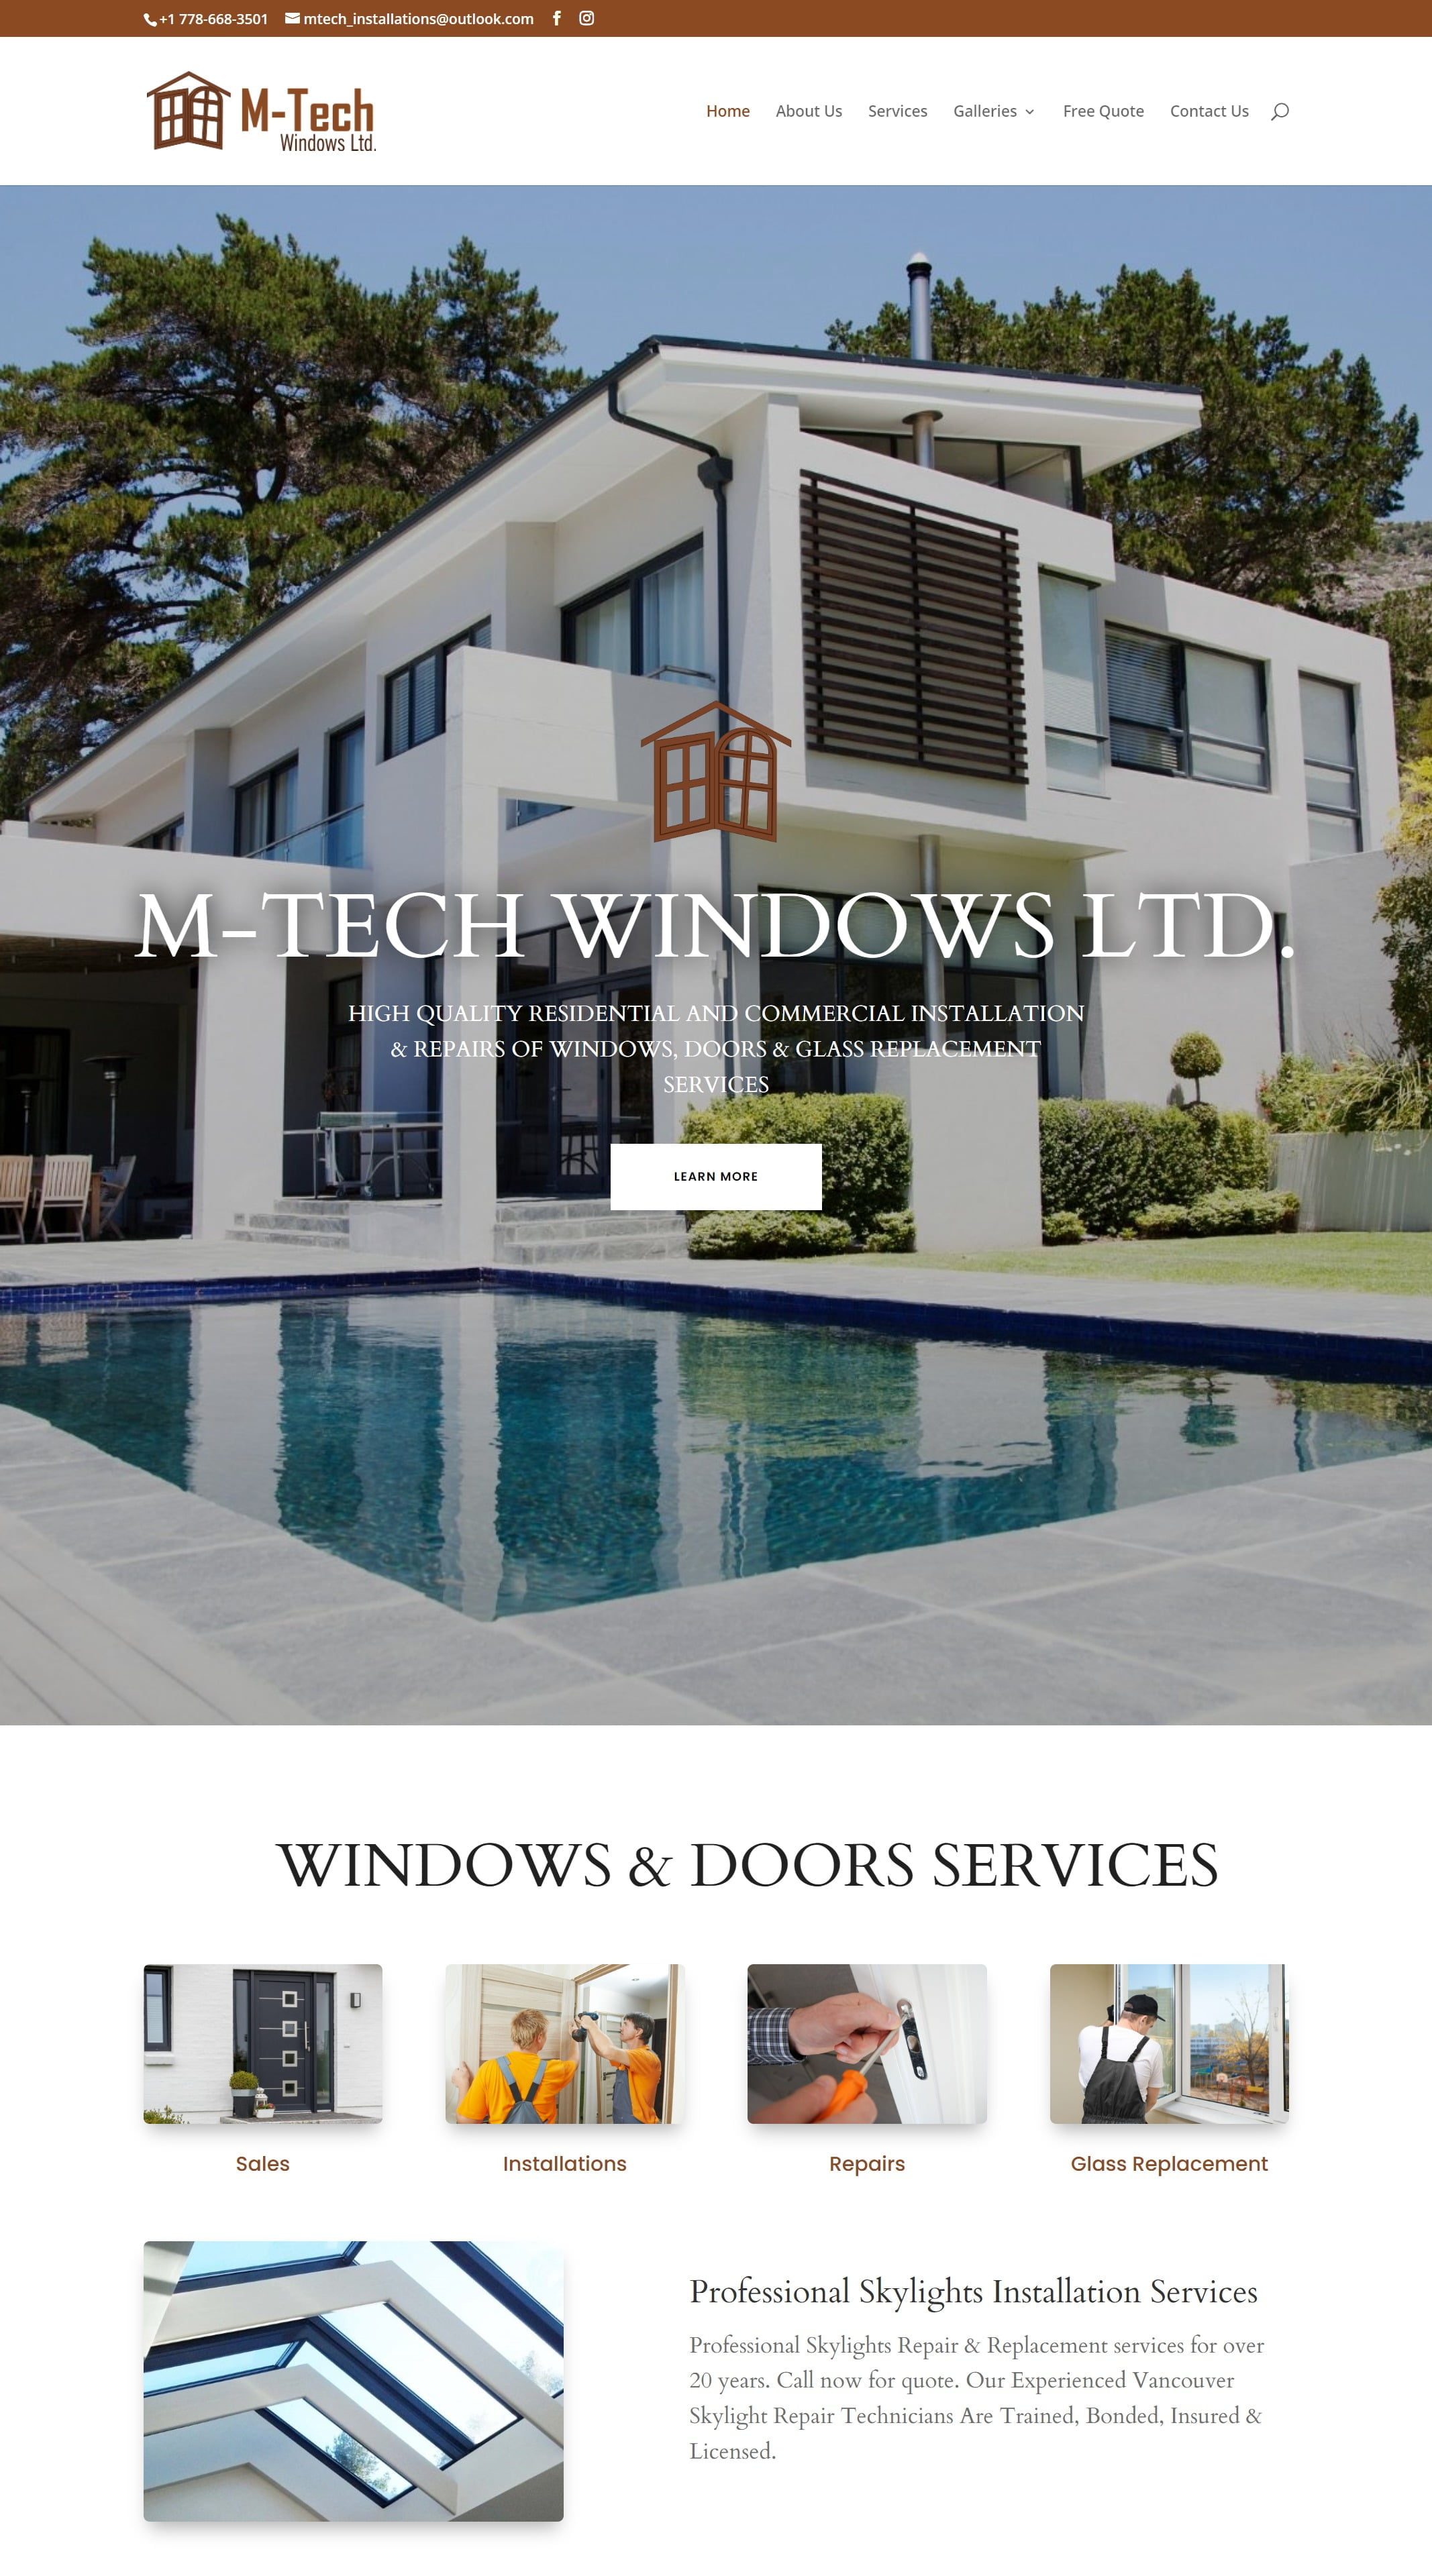 M Tech Windows Ltd - Window and door supplier